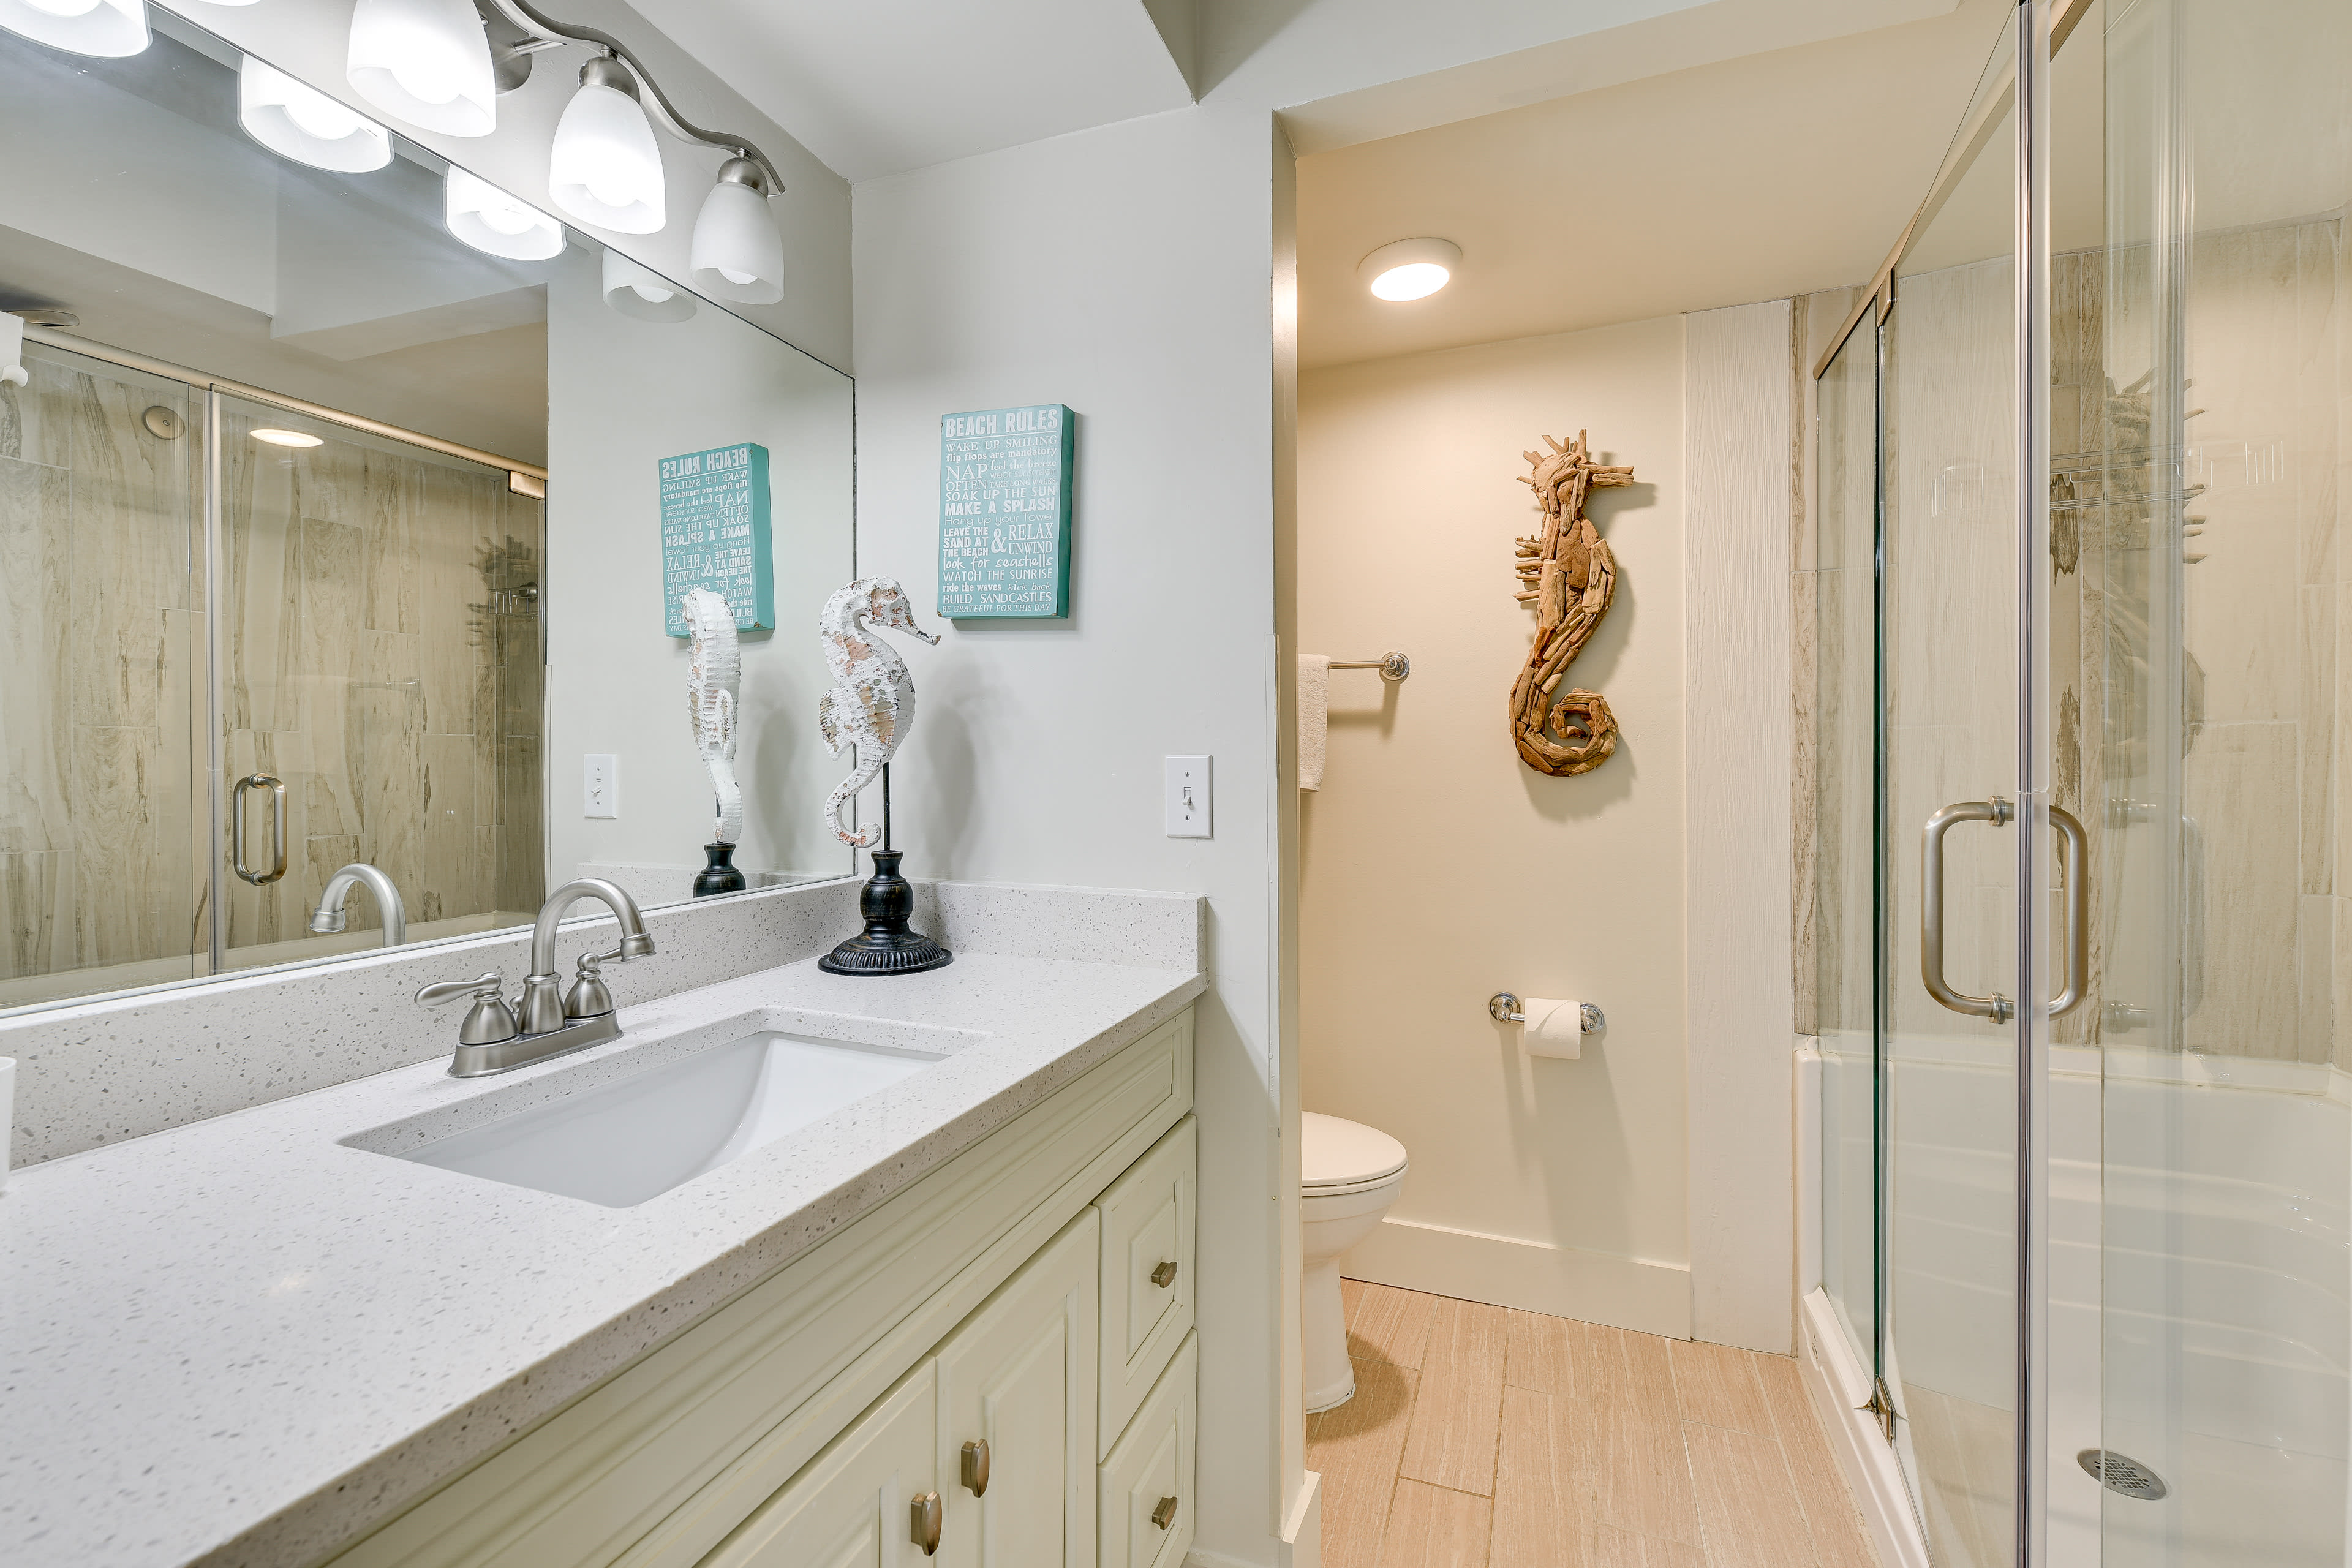 En-Suite Bathroom | Complimentary Toiletries | Hair Dryer